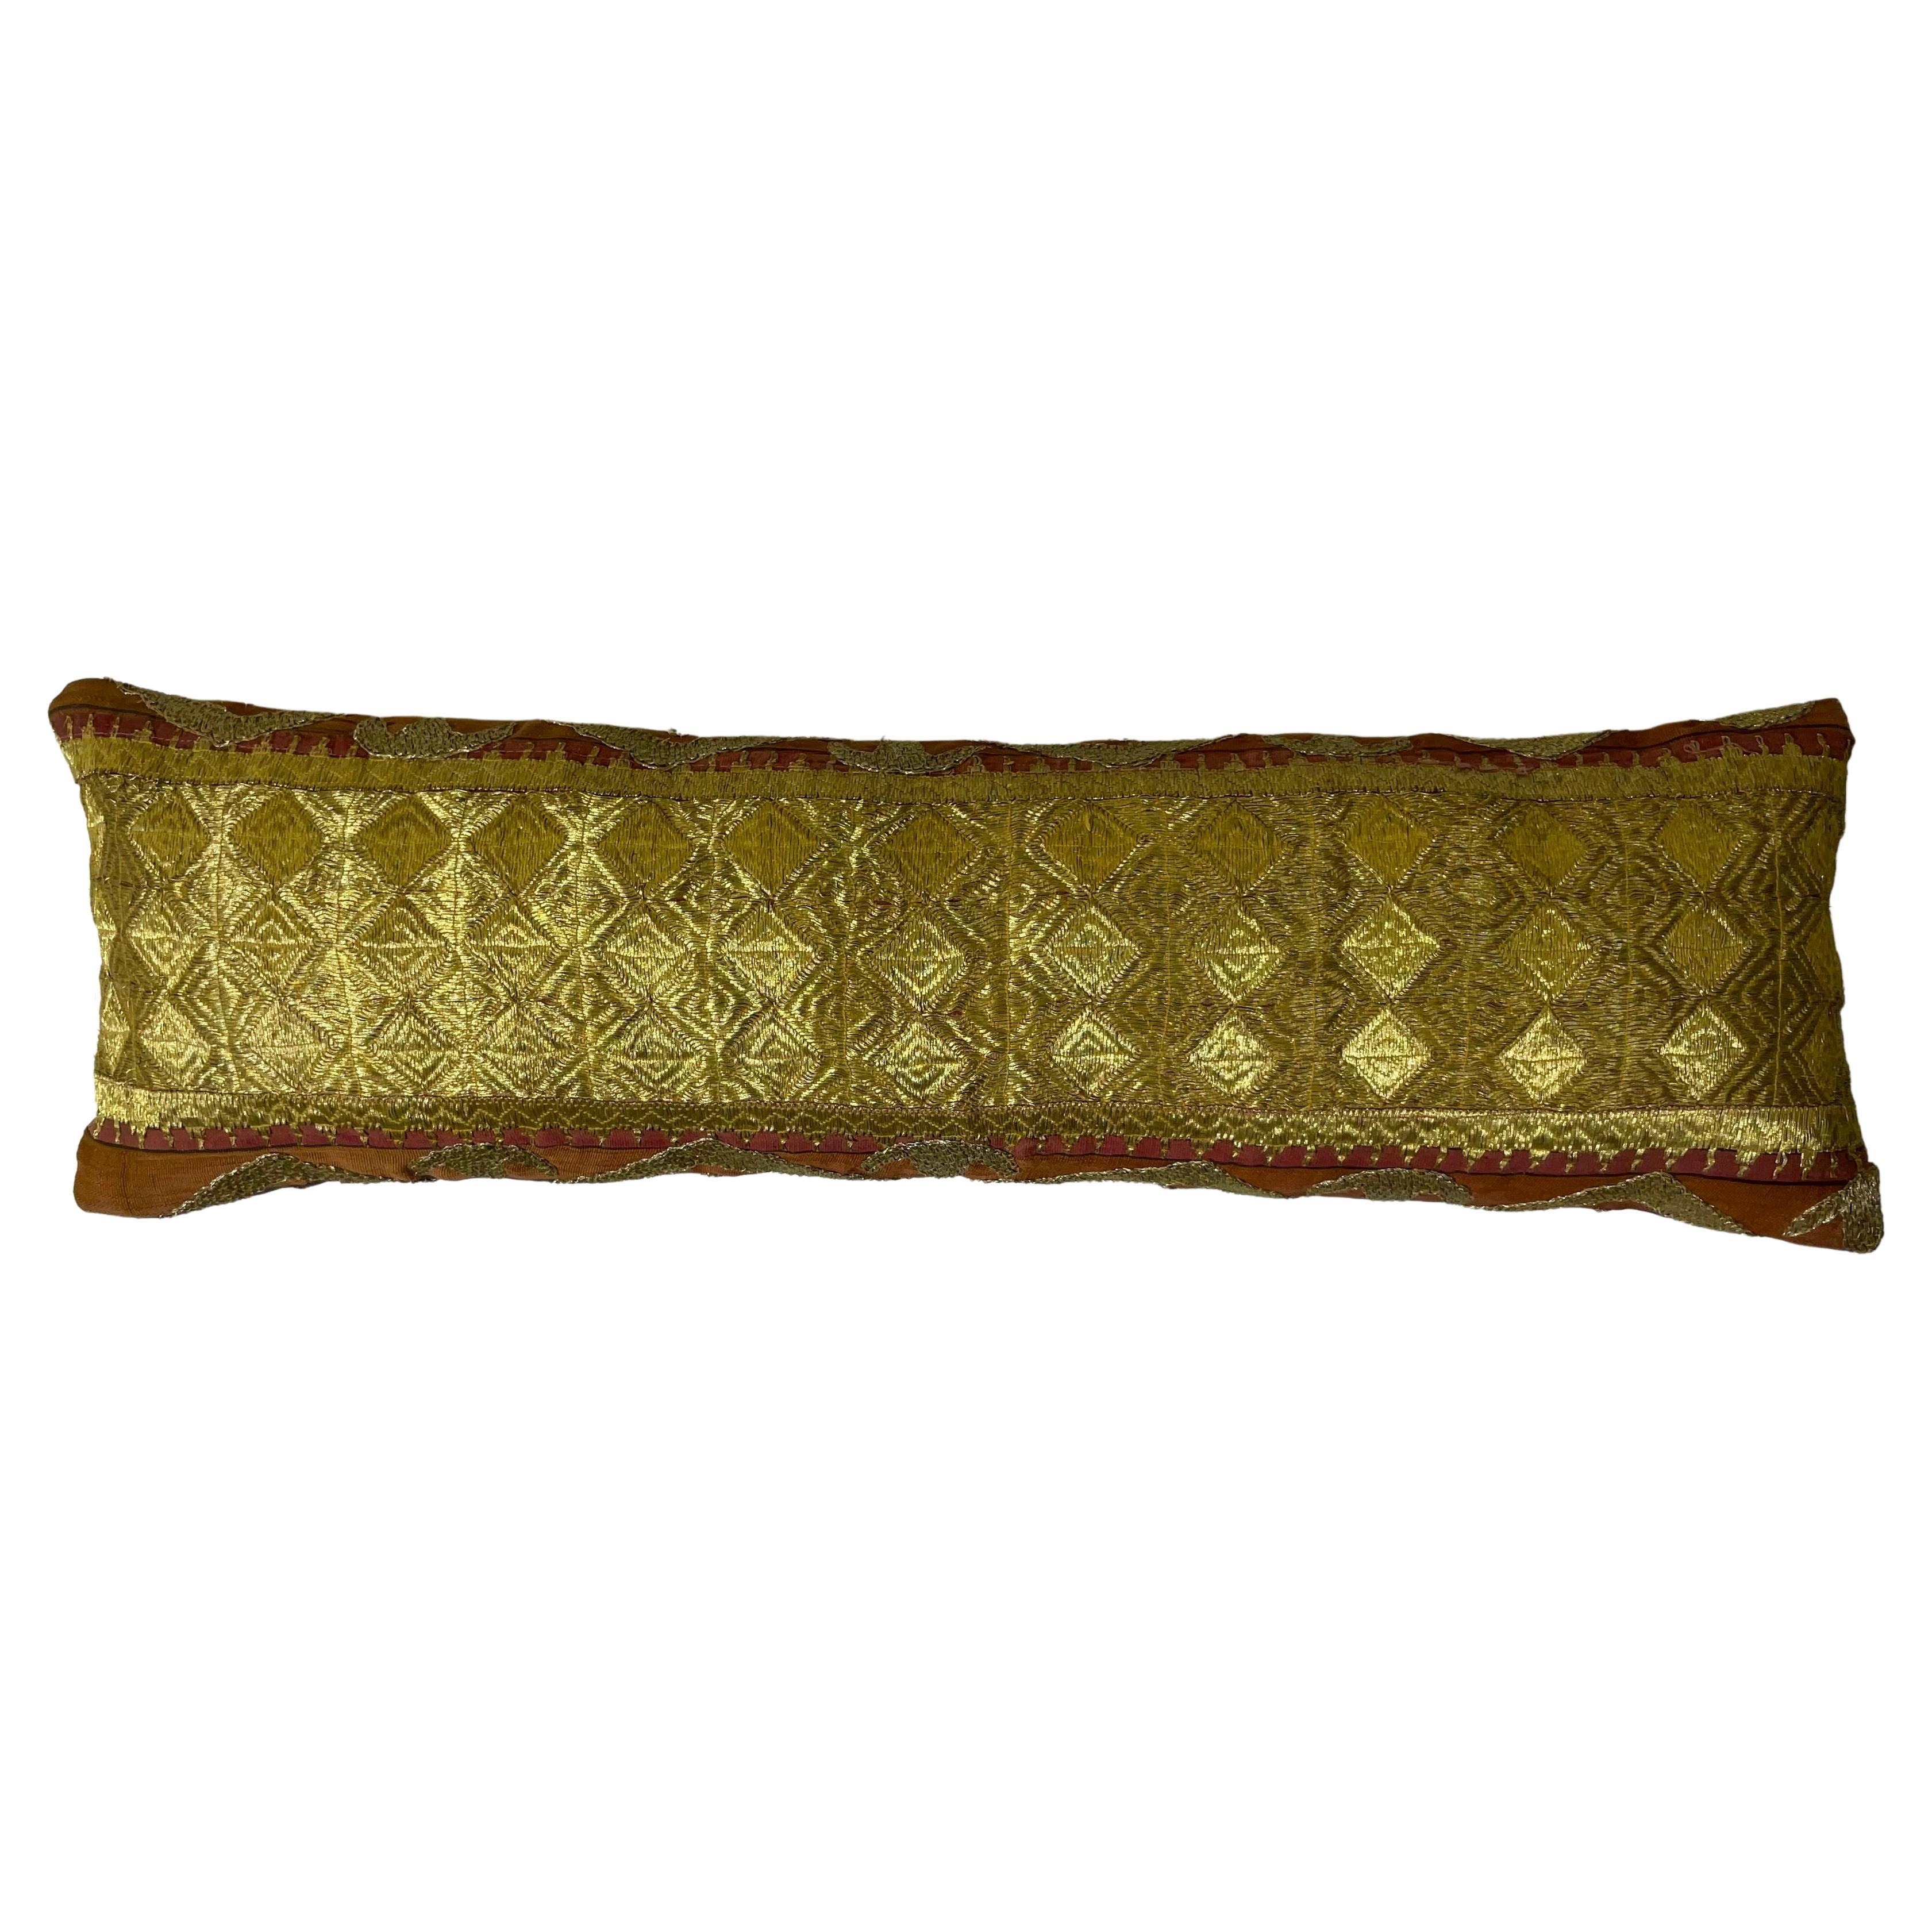 Einzelnes antikes Textilkissen mit Stickereien